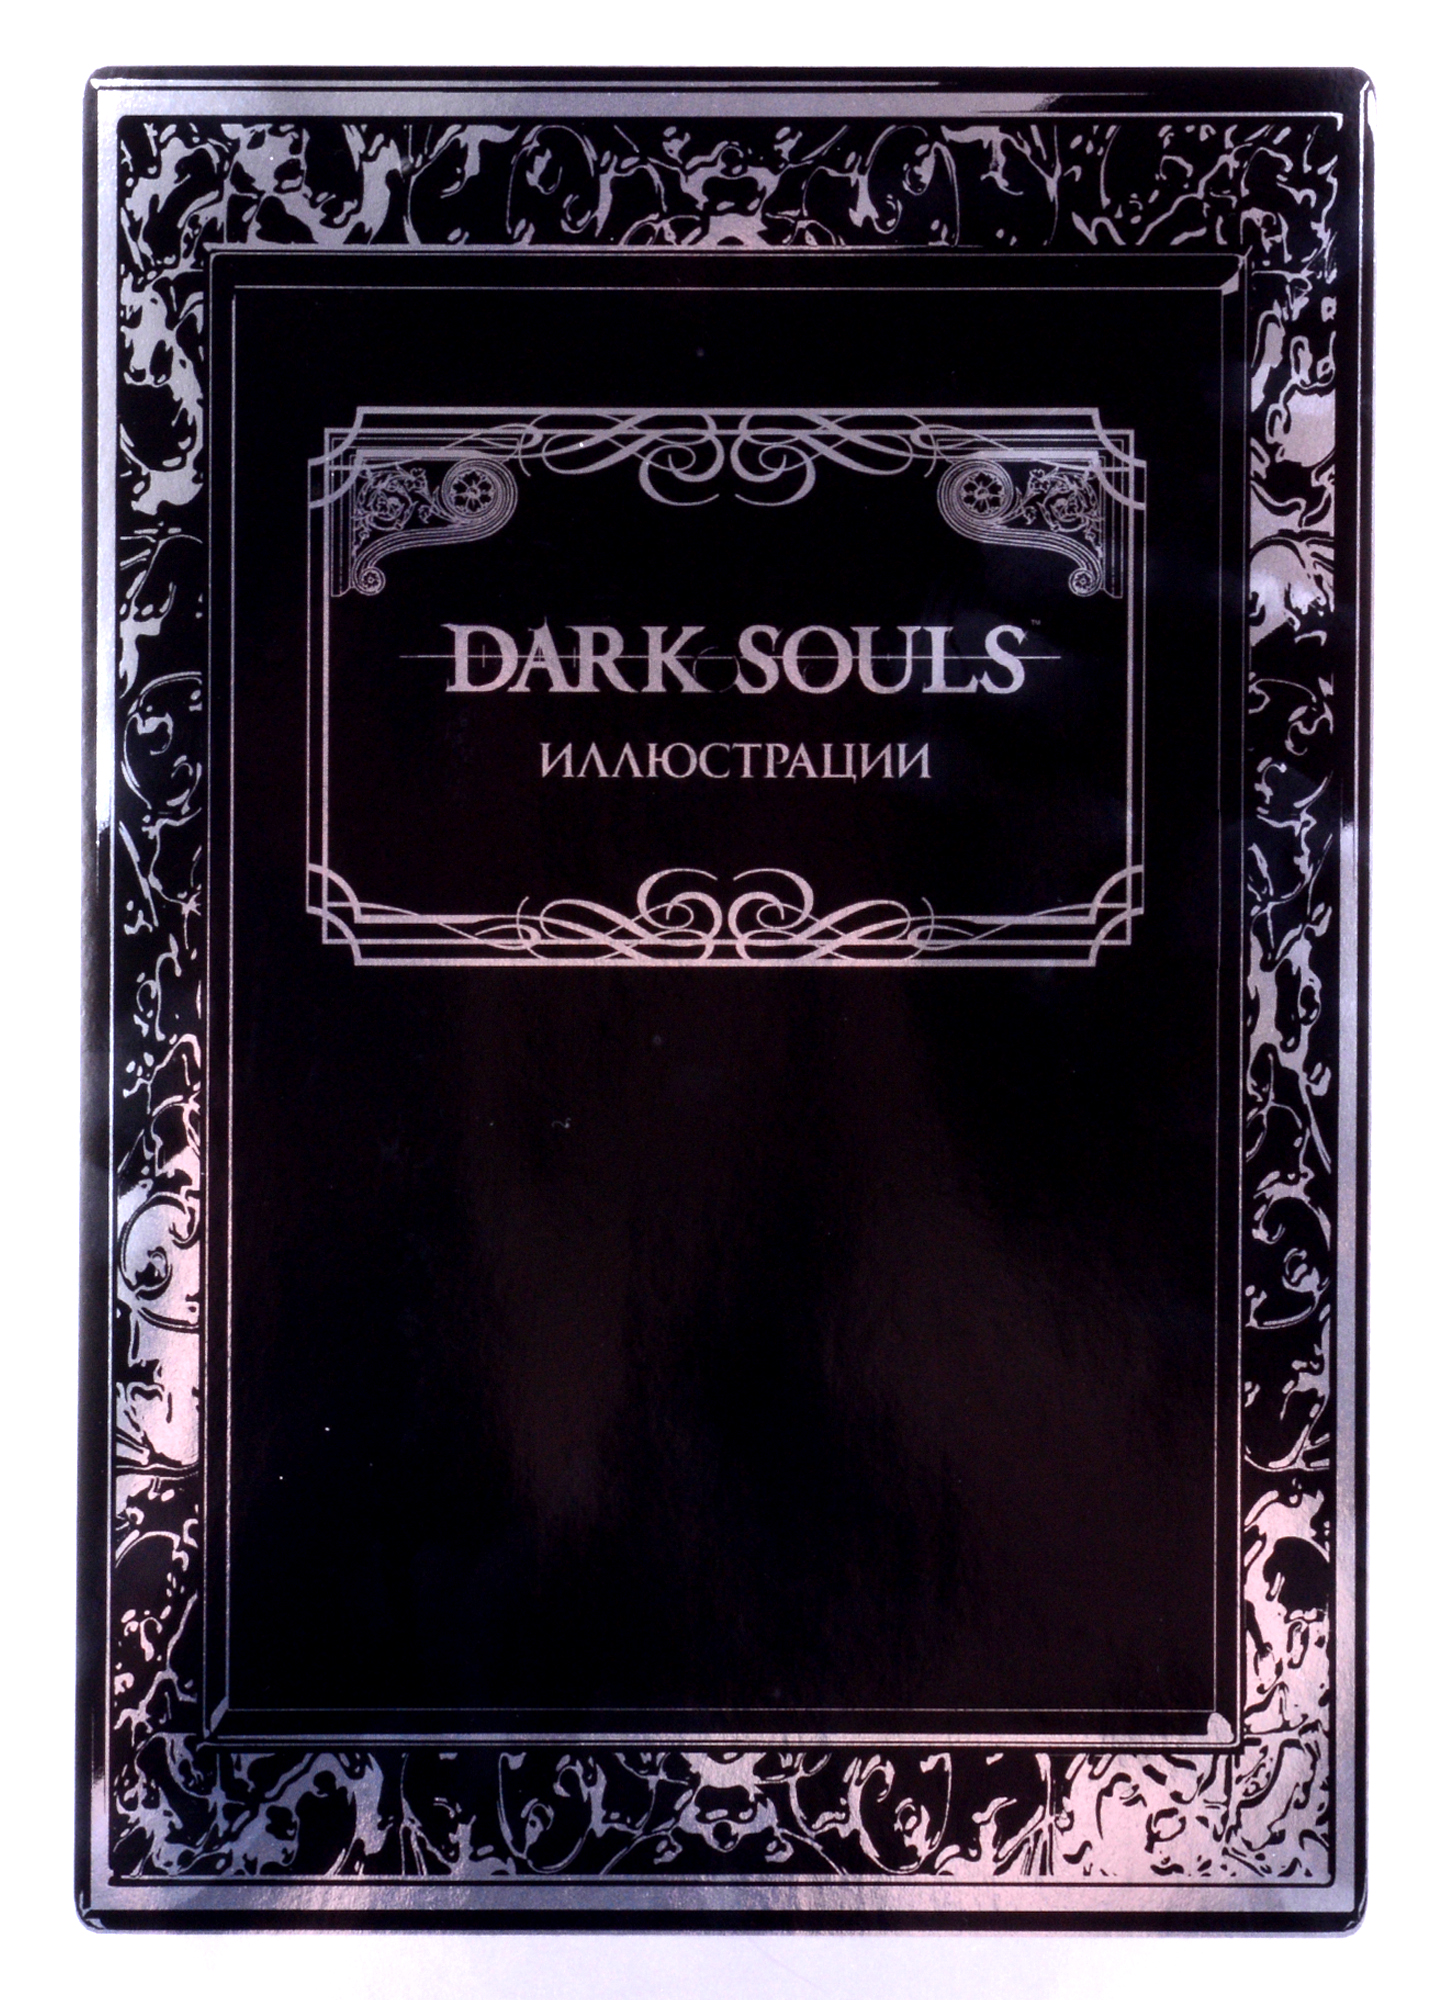 Dark Souls: Иллюстрации мешок для сменной обуви и вещей с рисунком белый модель игры dark souls 3 the fire fades edition 33079